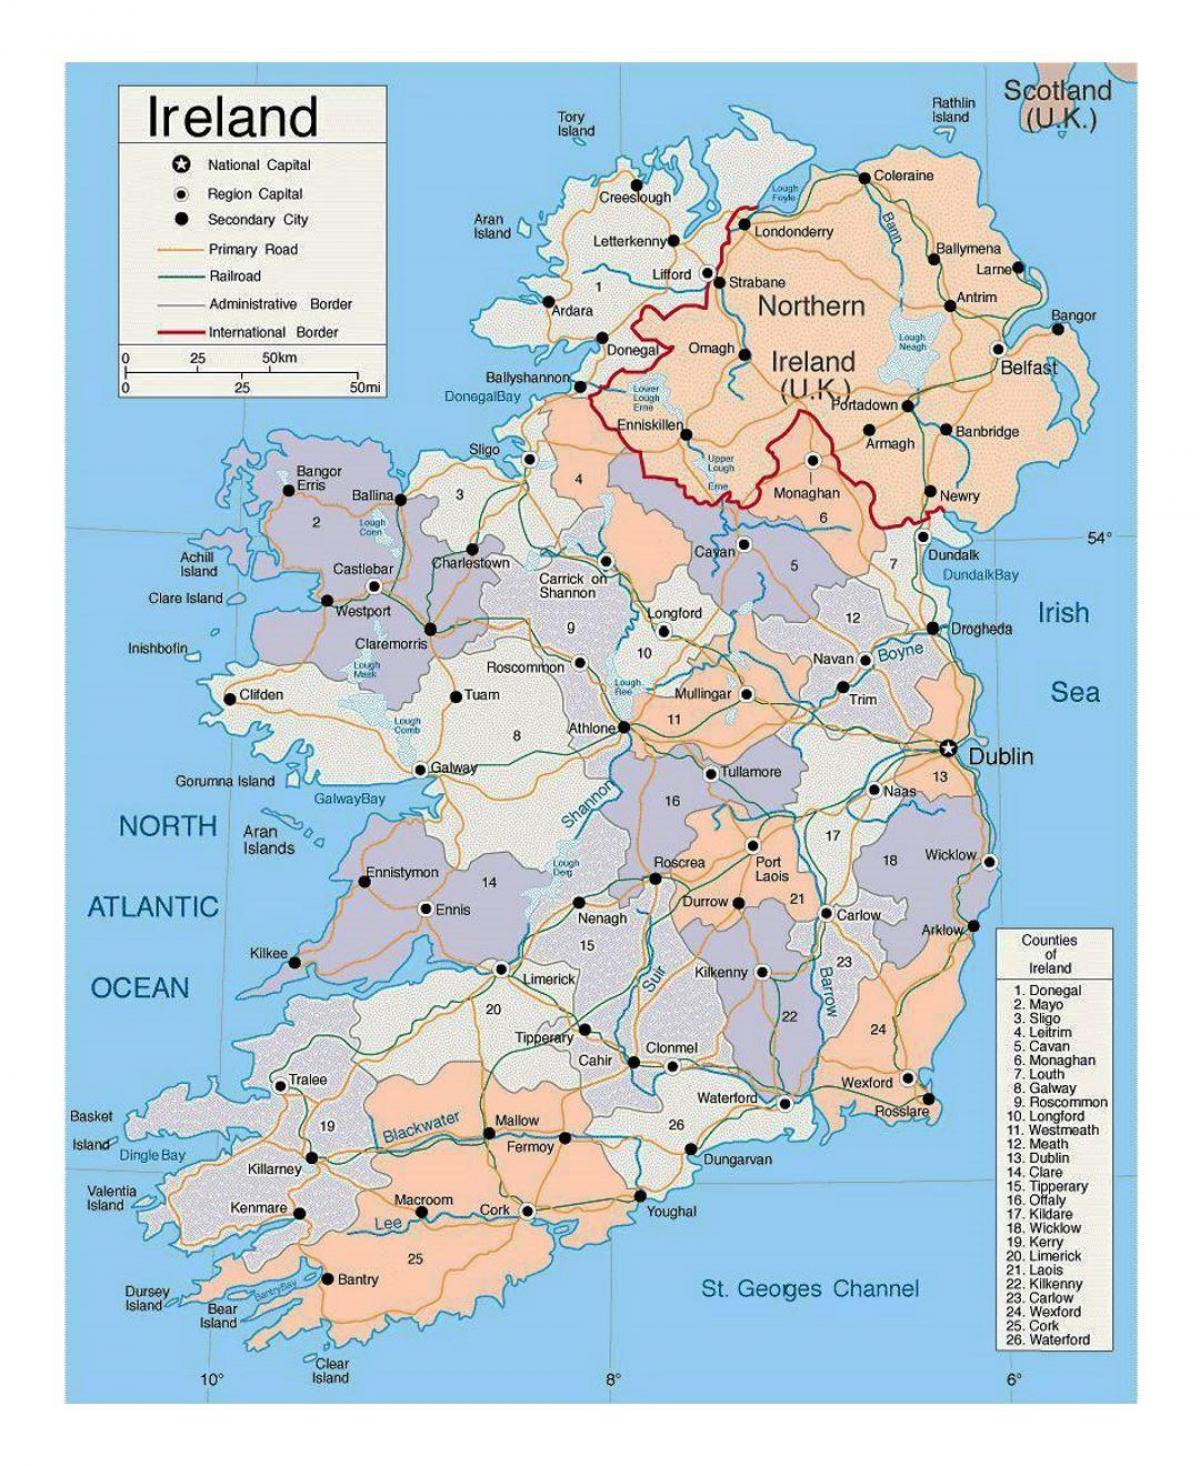 नक्शा आयरलैंड के शहरों के साथ